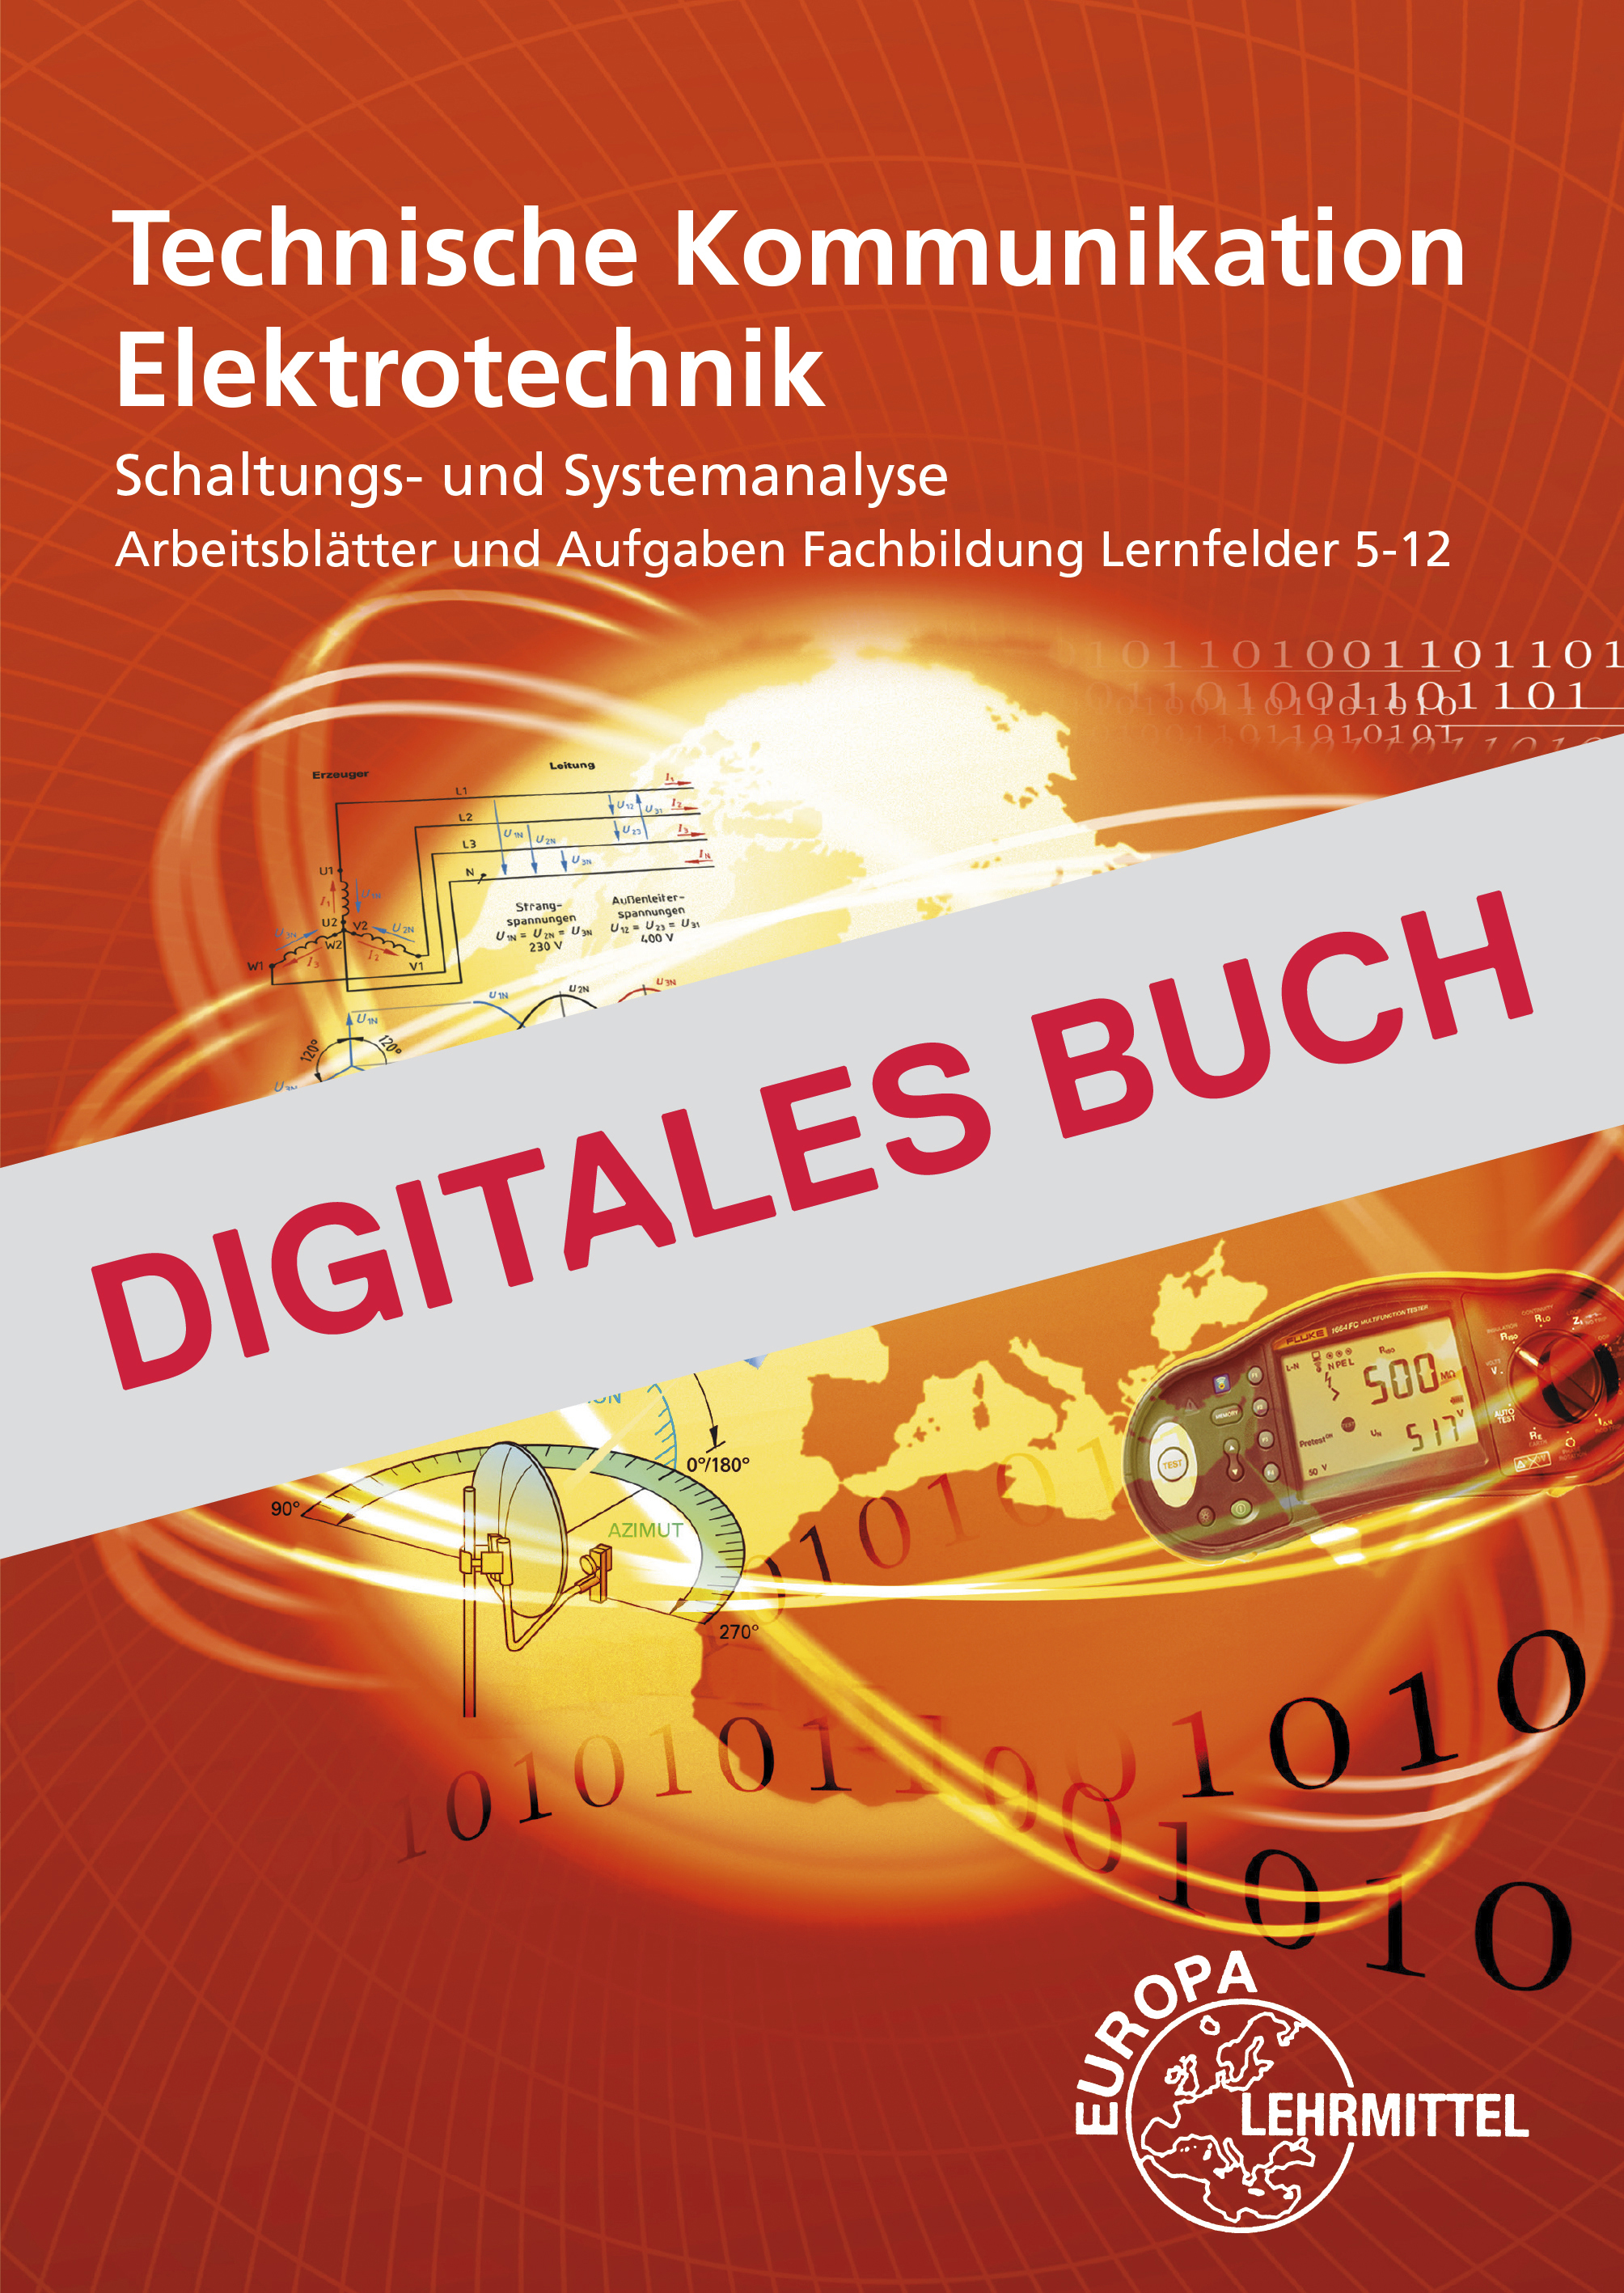 Technische Kommunikation LF 5-12 - Digitales Buch